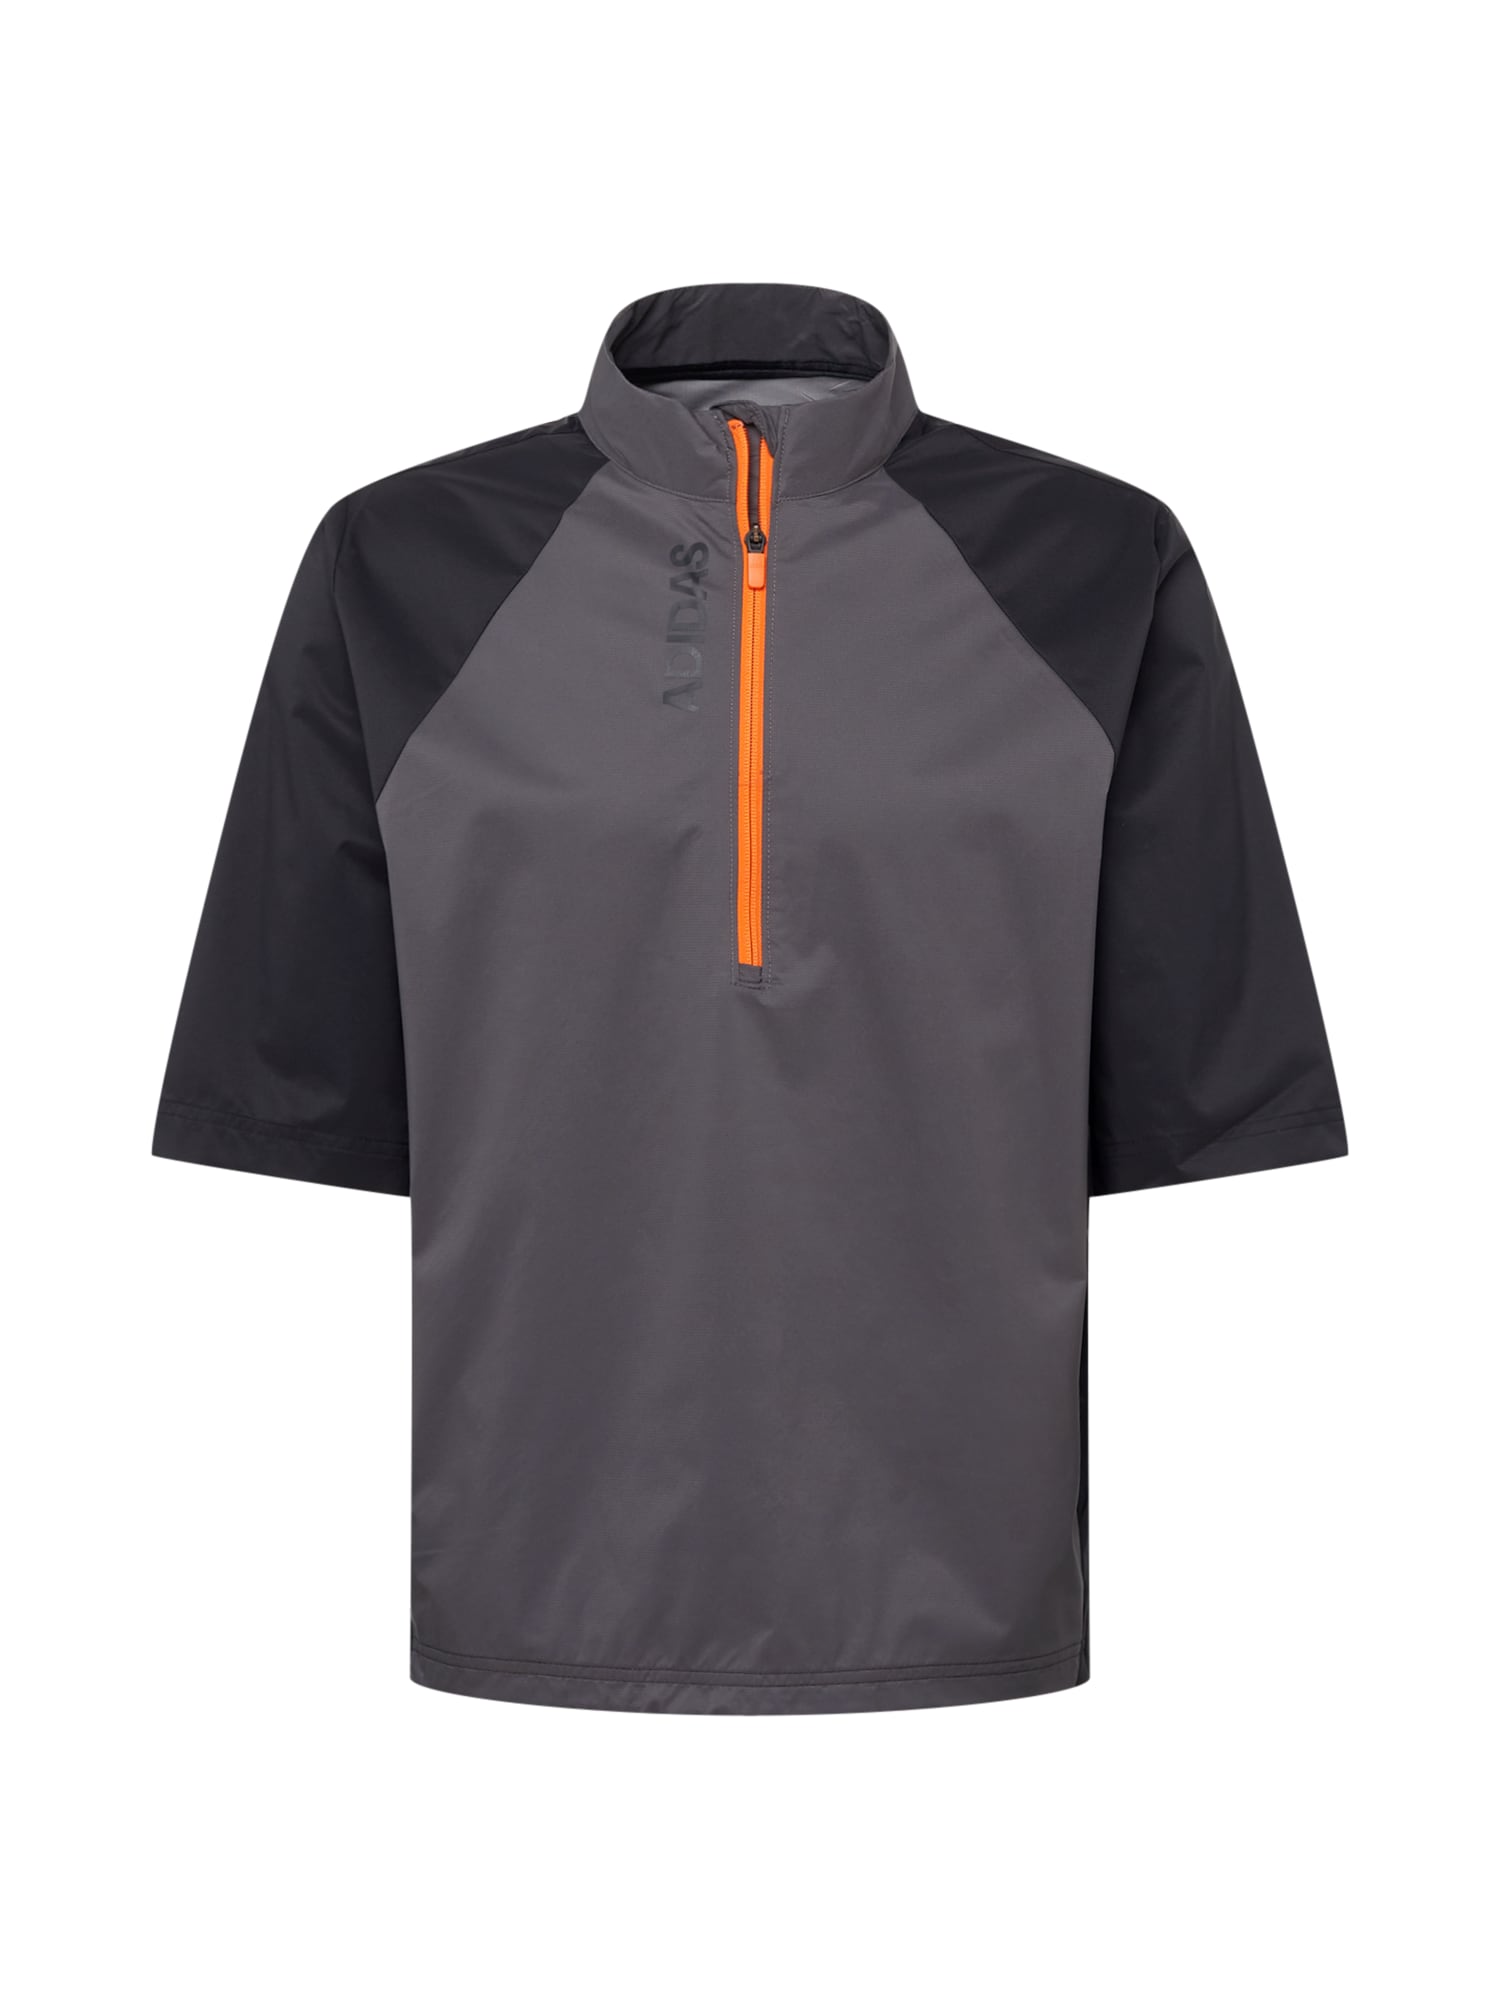 ADIDAS GOLF Funkcionalna majica  temno siva / oranžna / črna